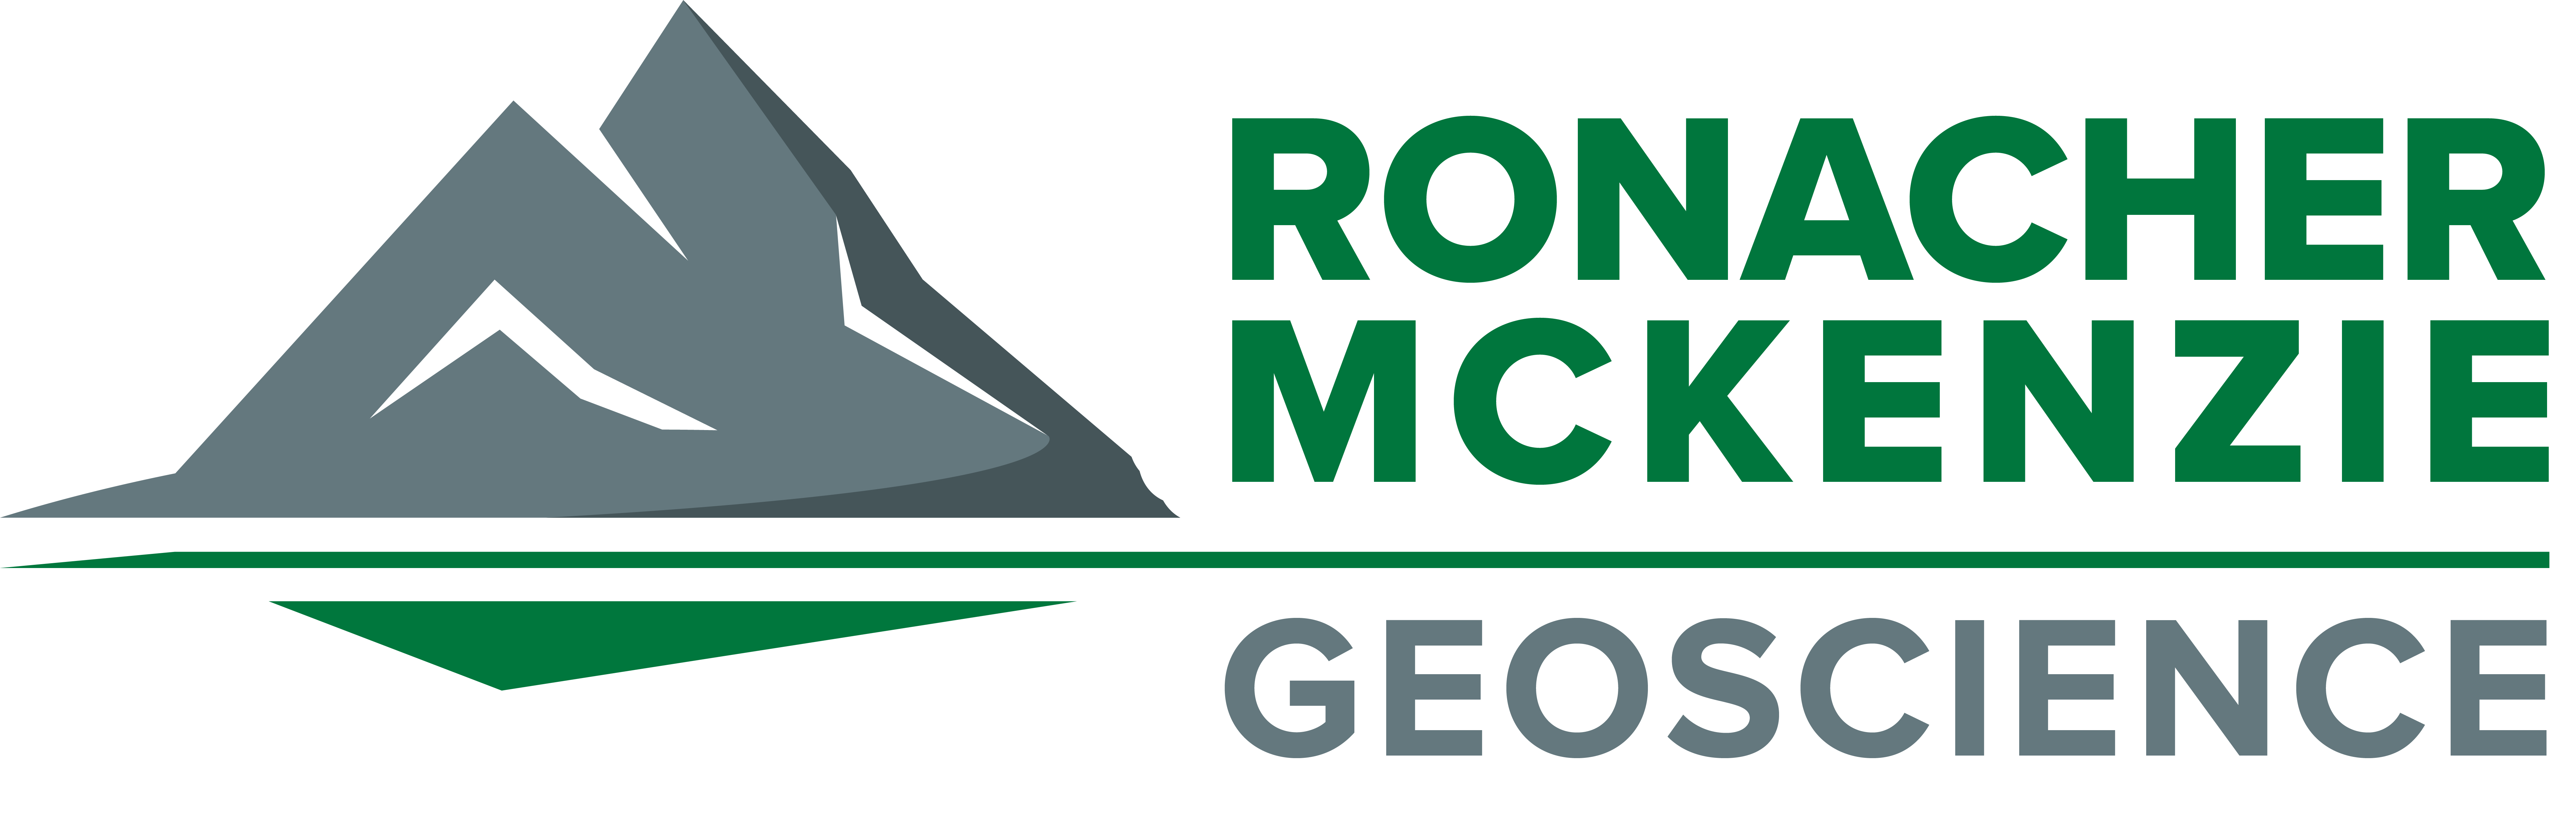 Ronacher McKenzie Geoscience Logo